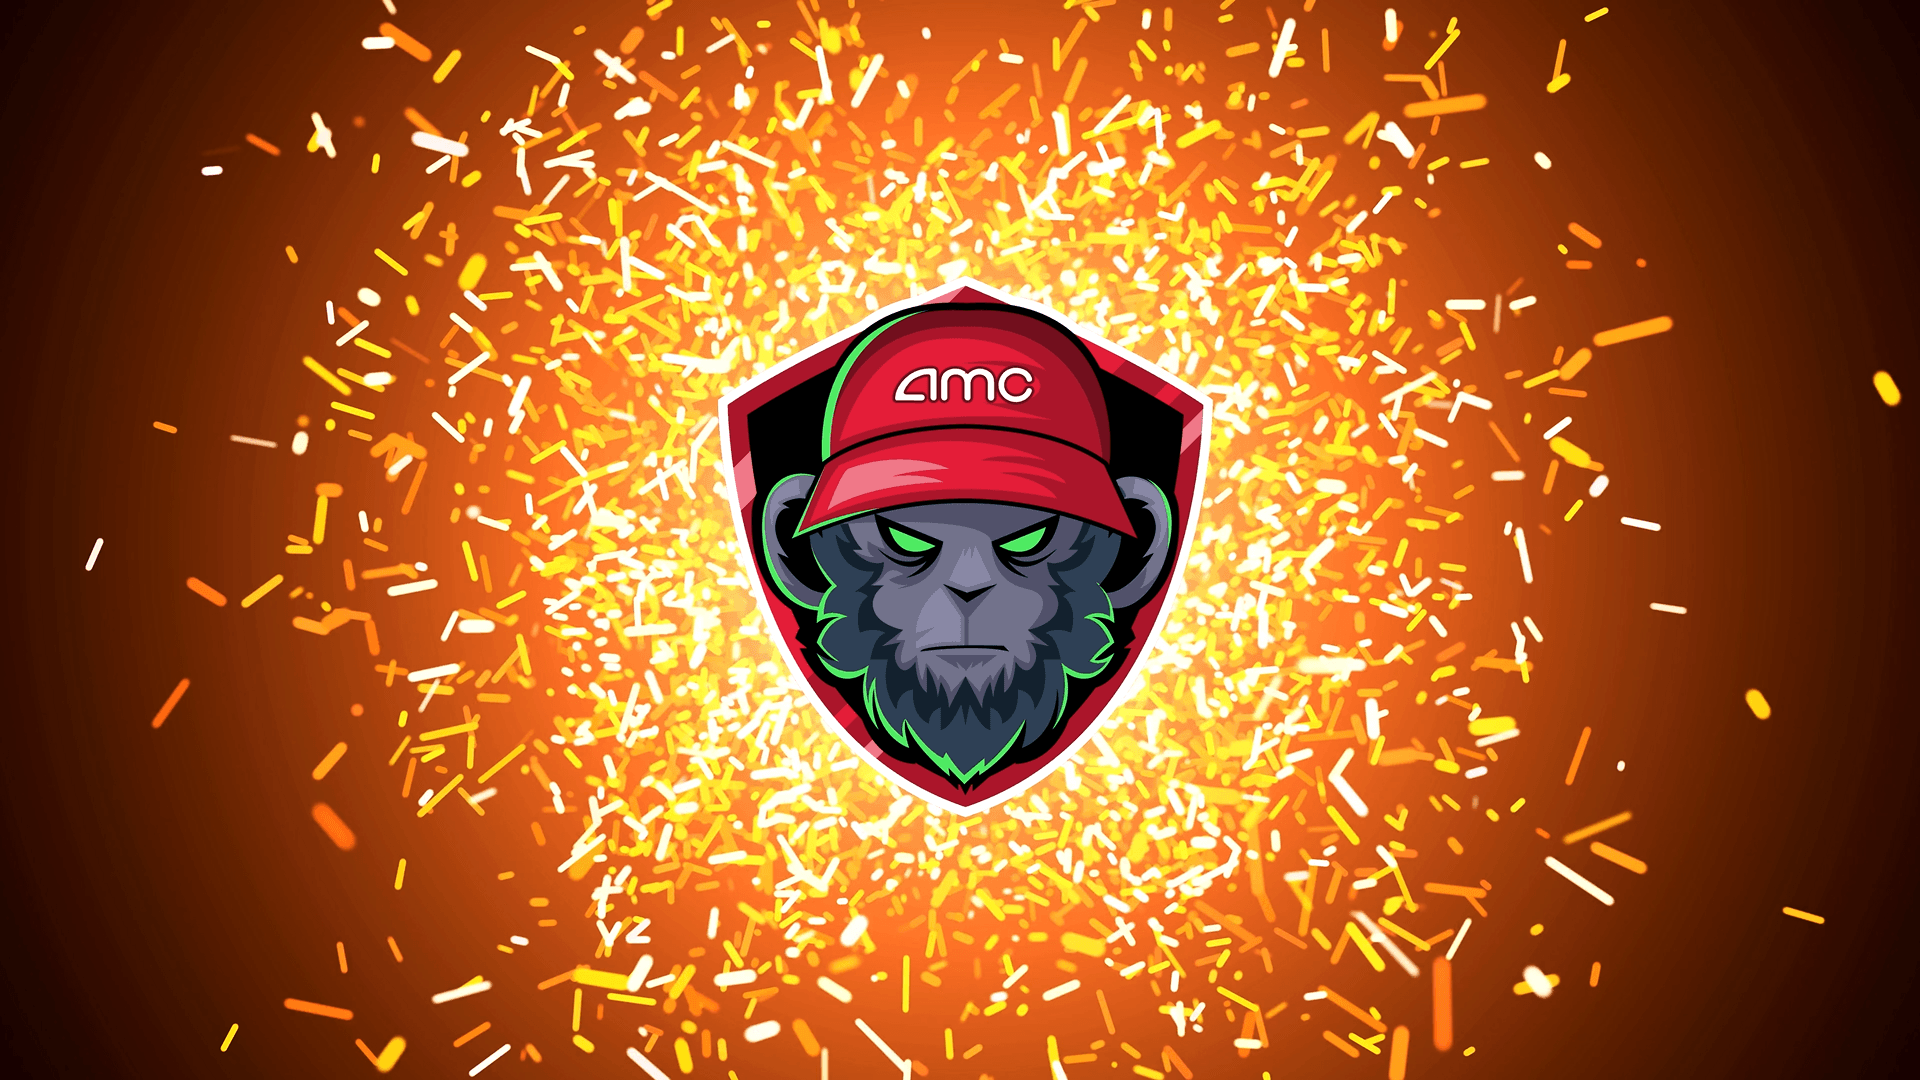 AMC Ape - sparks